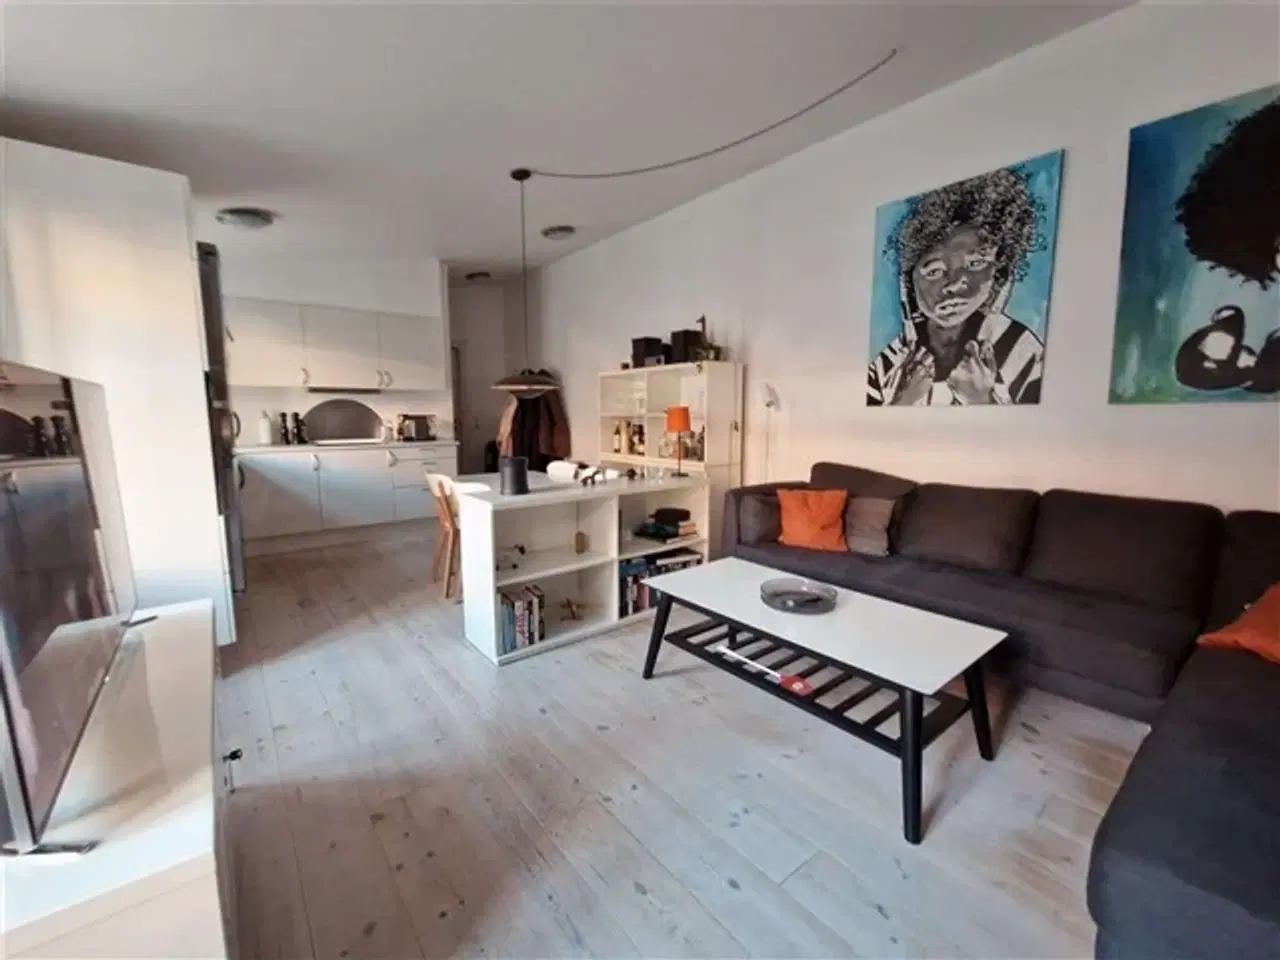 Billede 1 - Danmarksgade, 72 m2, 2 værelser, 6.750 kr., Esbjerg, Ribe